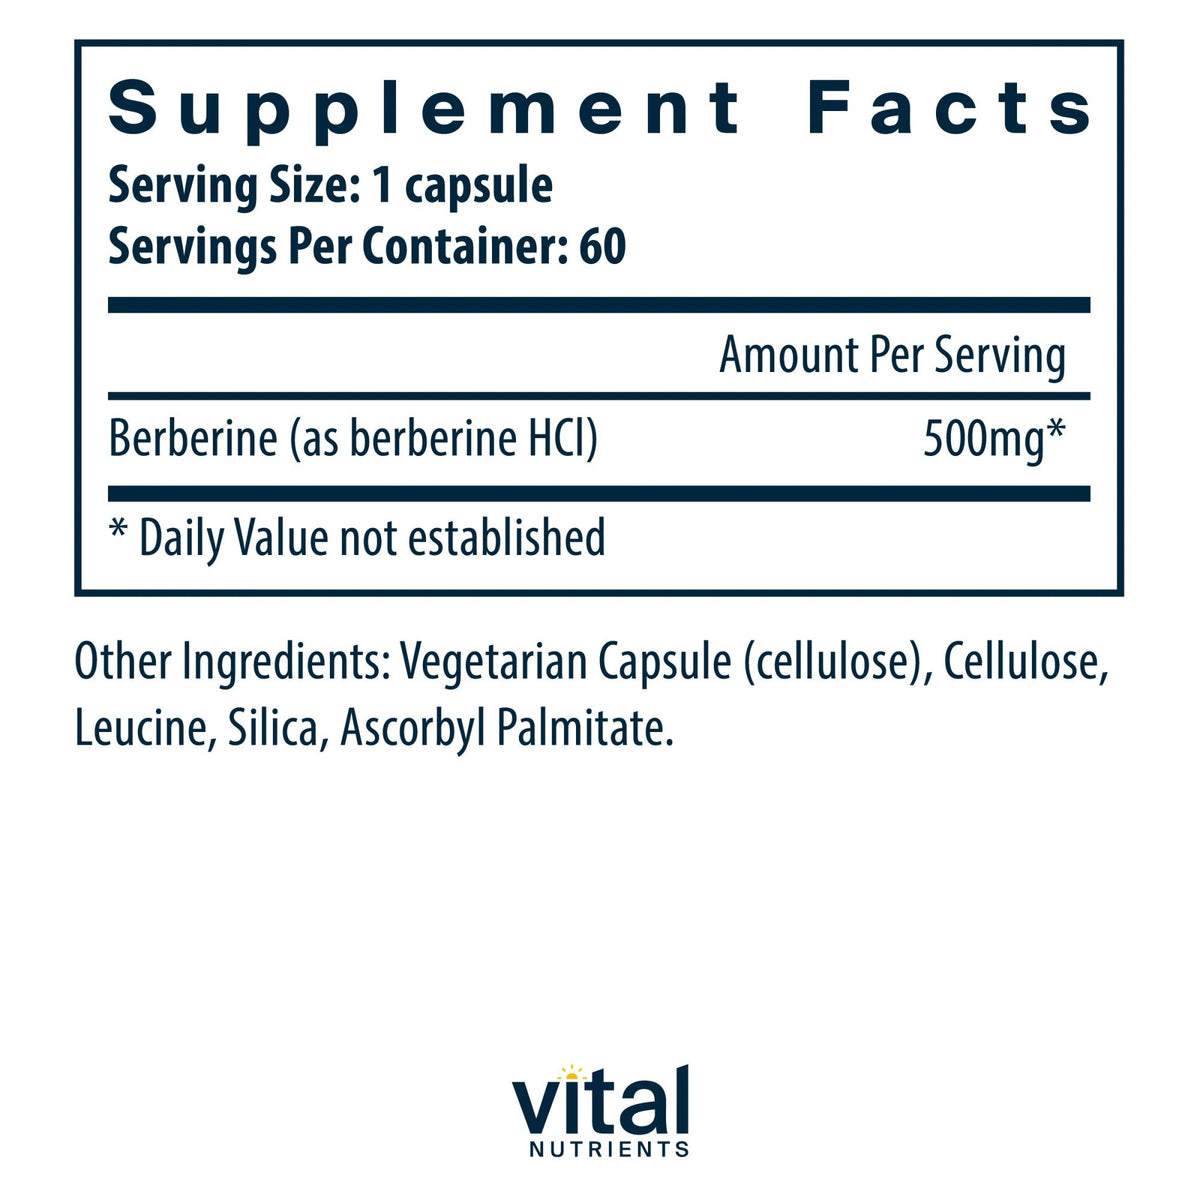 Vital Nutrients Berberine 500 mg 60 Capsule